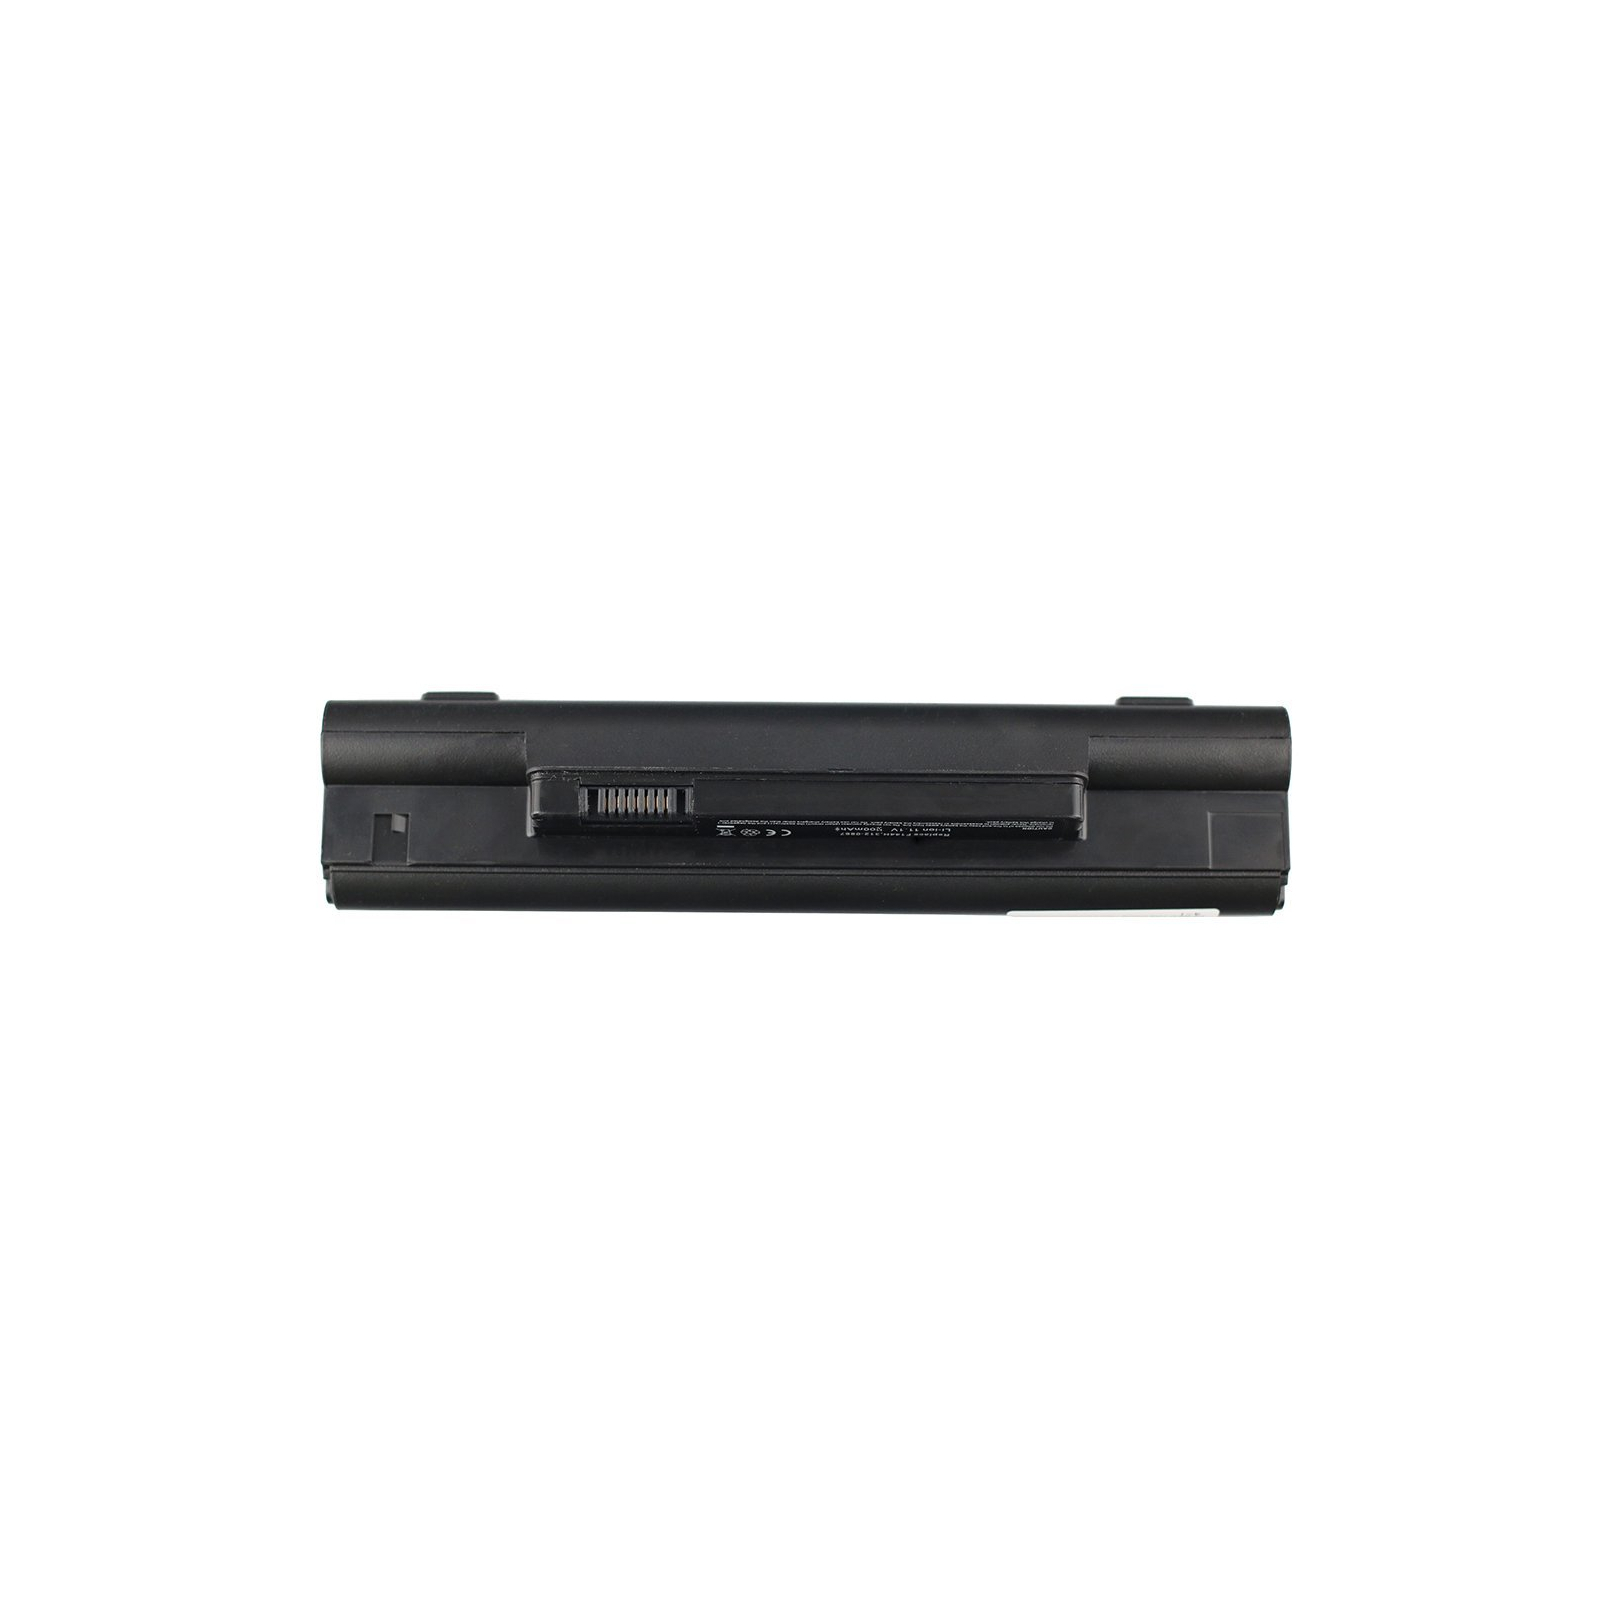 Аккумулятор для ноутбука AlSoft Dell Inspiron mini 10 PP19S 2200mAh 3cell 11.1V Li-ion (A41401) изображение 3